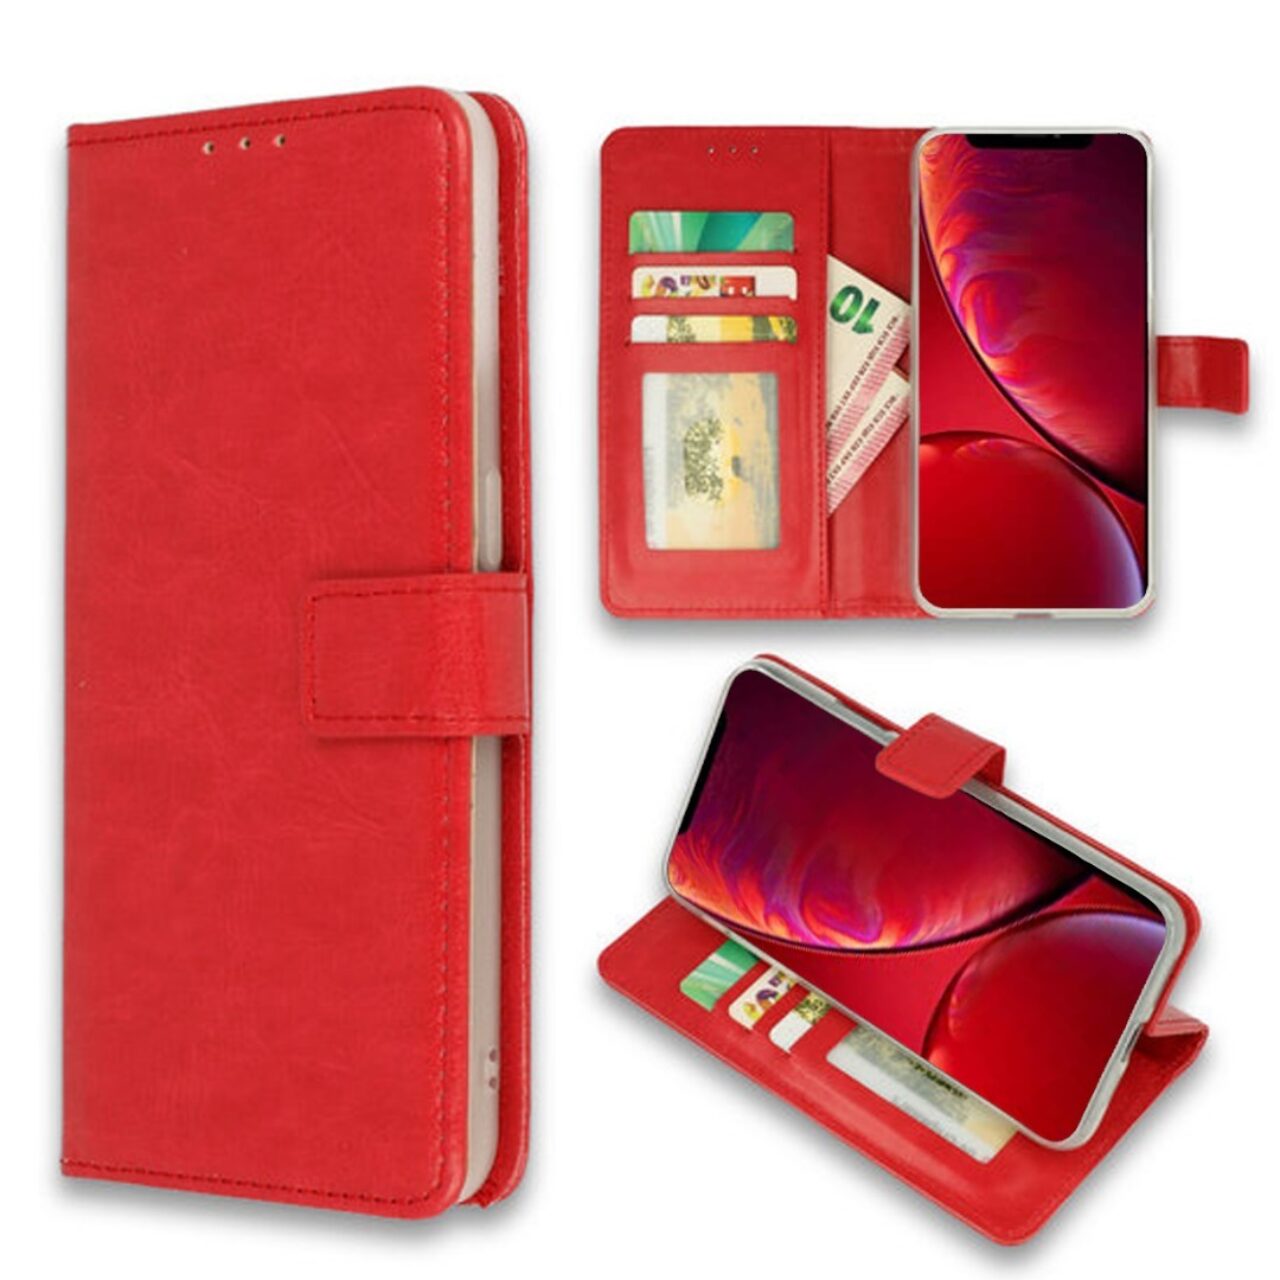 AAA boek rood-hoesje-case-schutzhulle-coque-cover-smartphone-book case-boekmodel